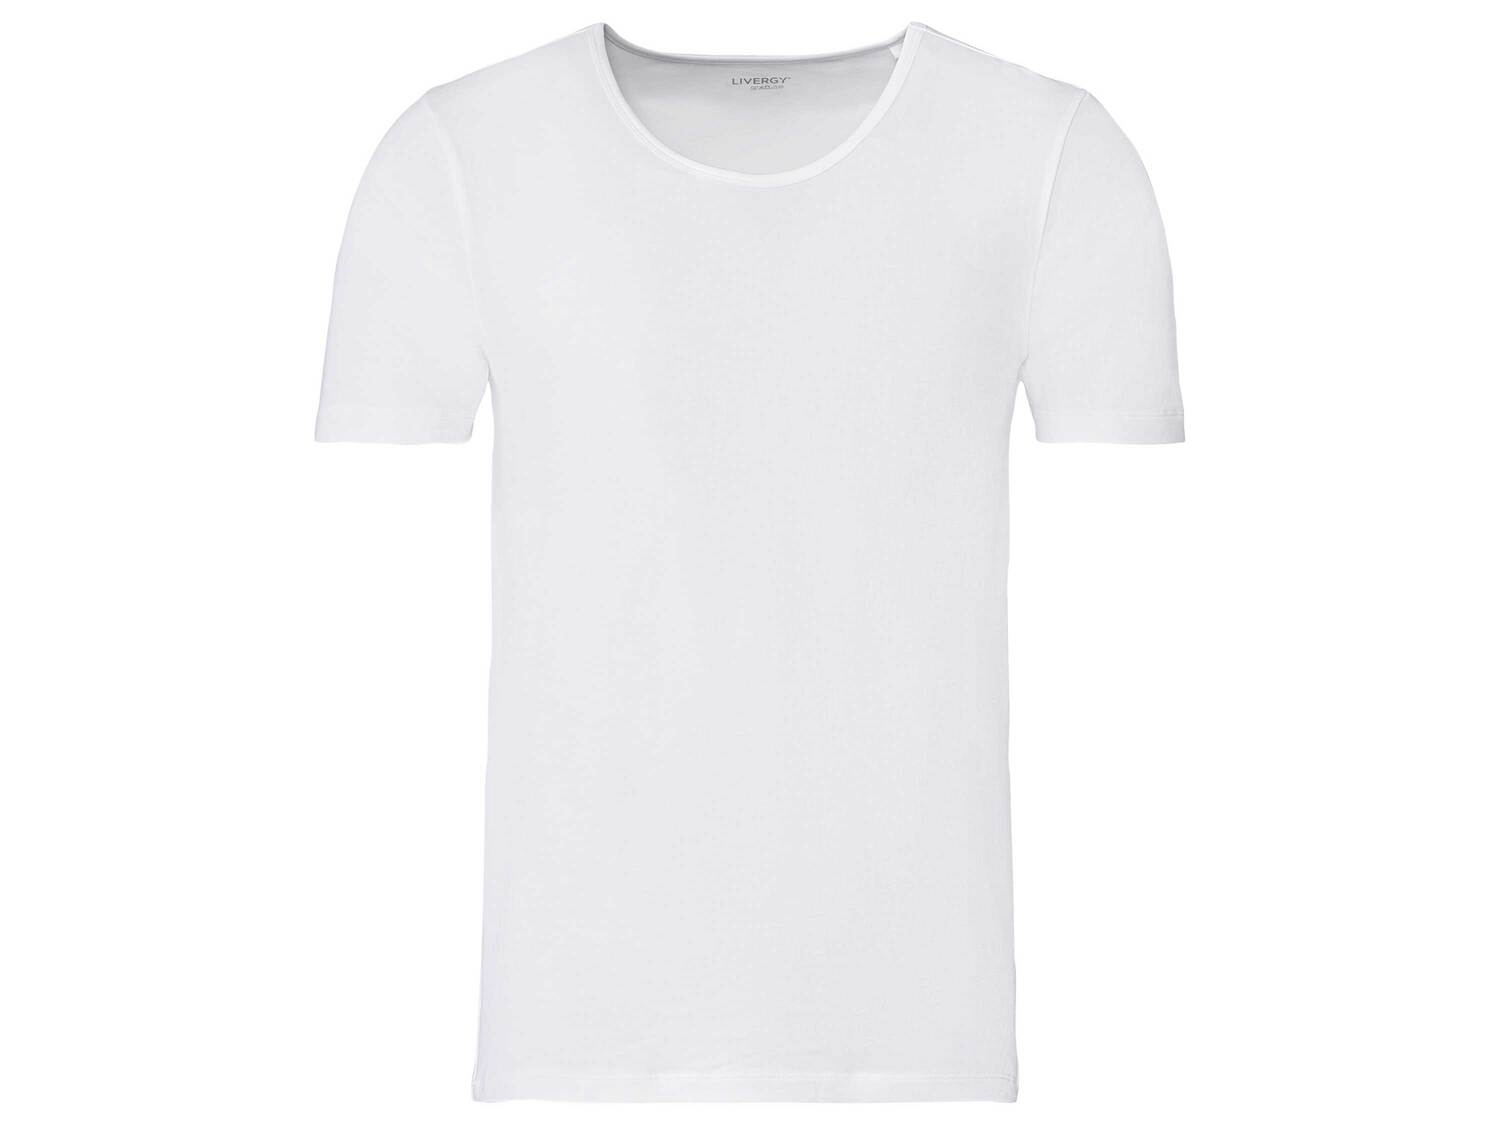 T-shirt en coton bio , le prix 3.99 € 
- Du S au XL selon modèle
- Ex. 95 % ...